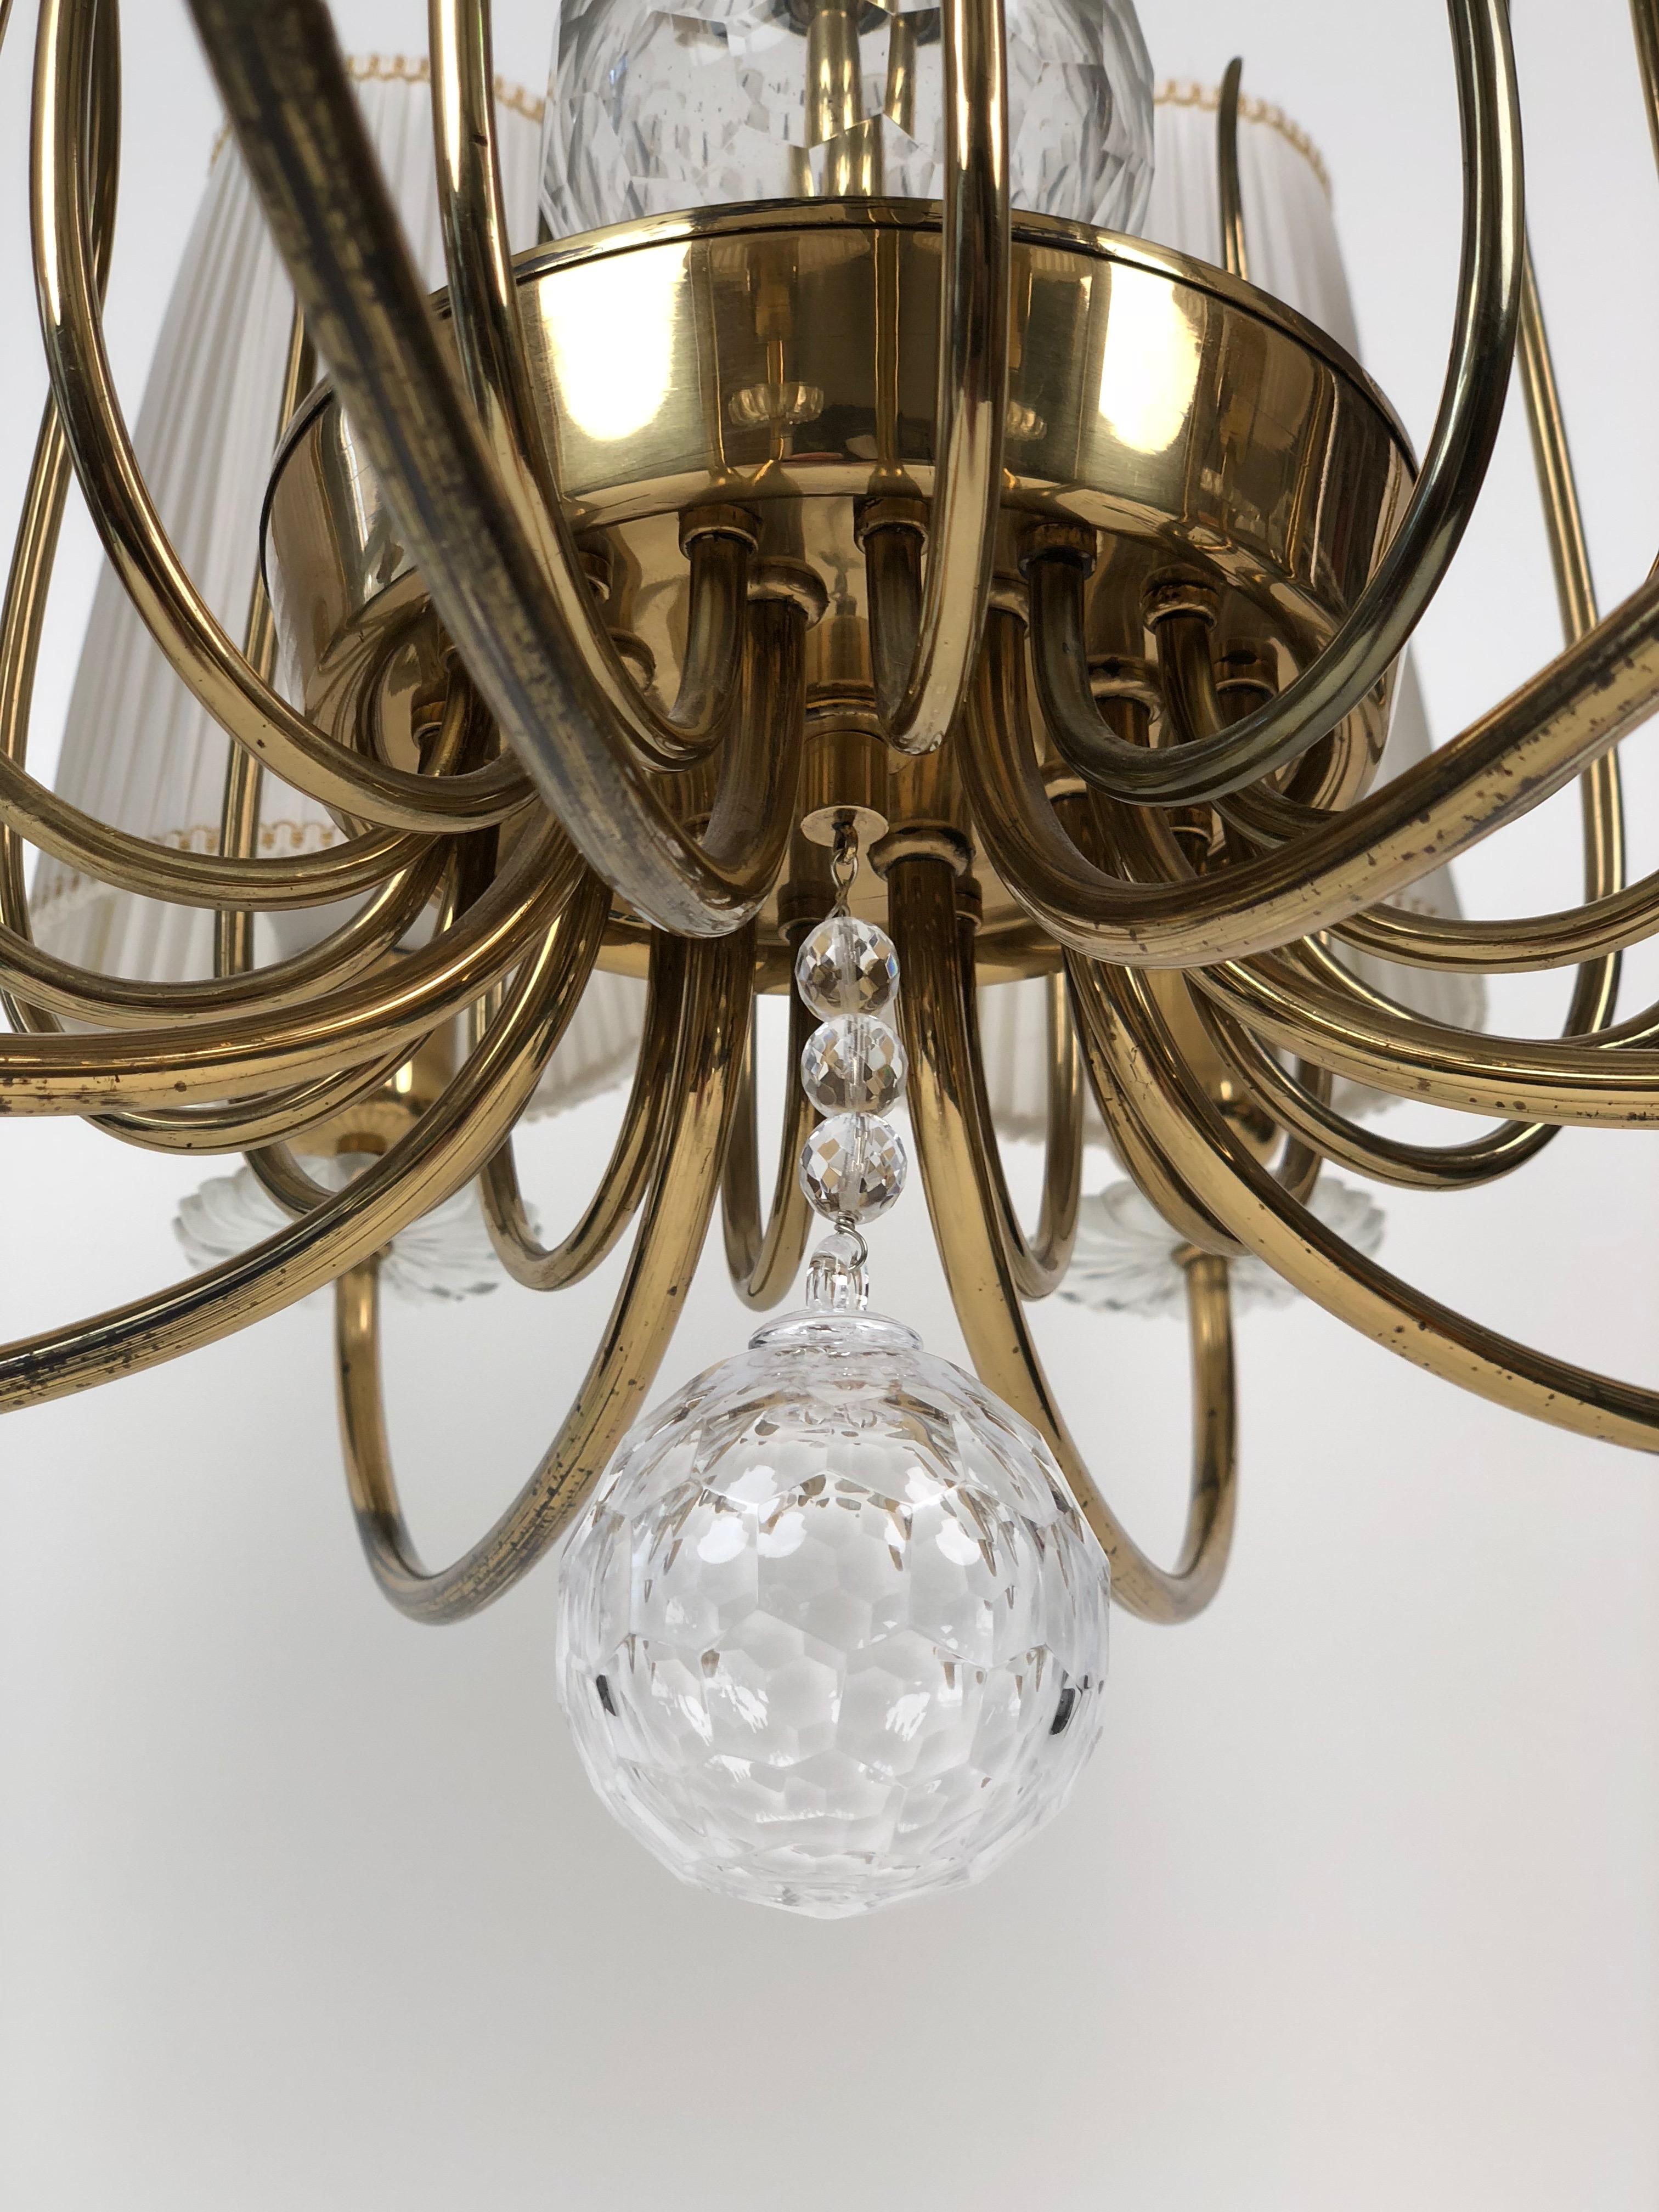 Elégant lustre du producteur autrichien J. L. Lobmeyr avec 8 bras, éléments en cristal et abat-jour originaux en soie blanche.
La lampe suspendue a la possibilité d'utiliser seulement la moitié des lumières, grâce à un interrupteur.
      